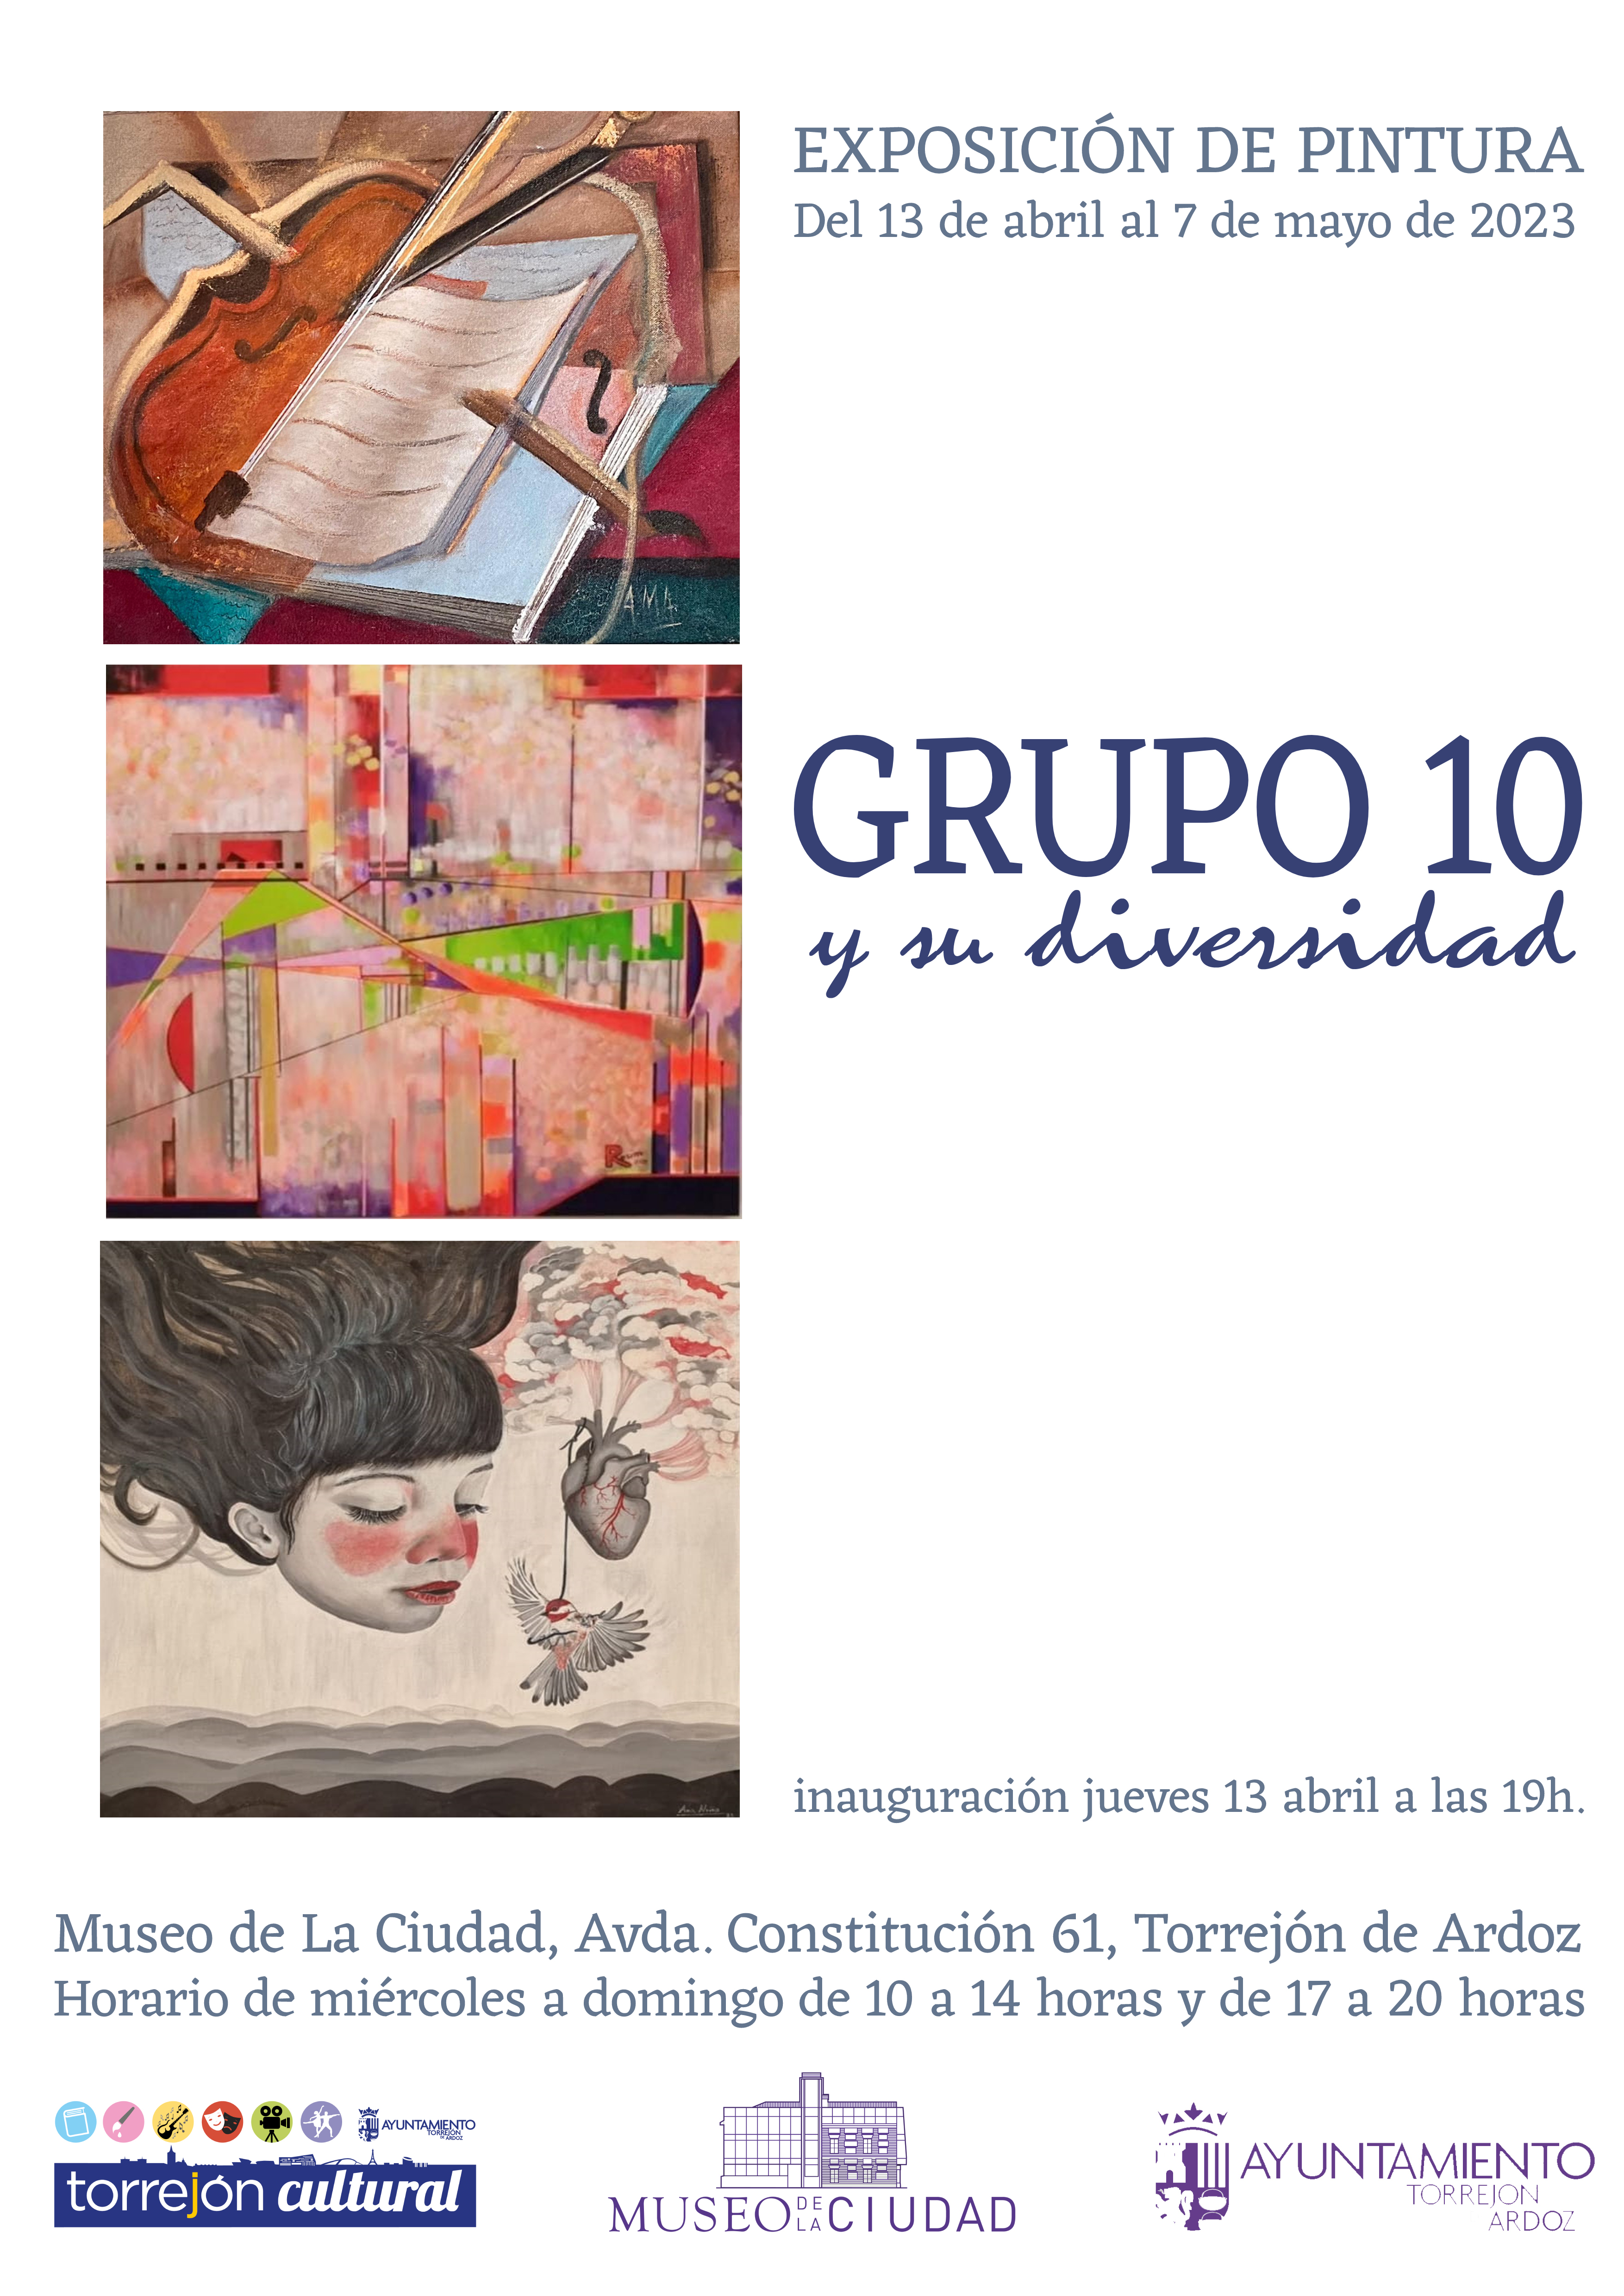 Exposición de pintura "Grupo 10 y su diversidad"